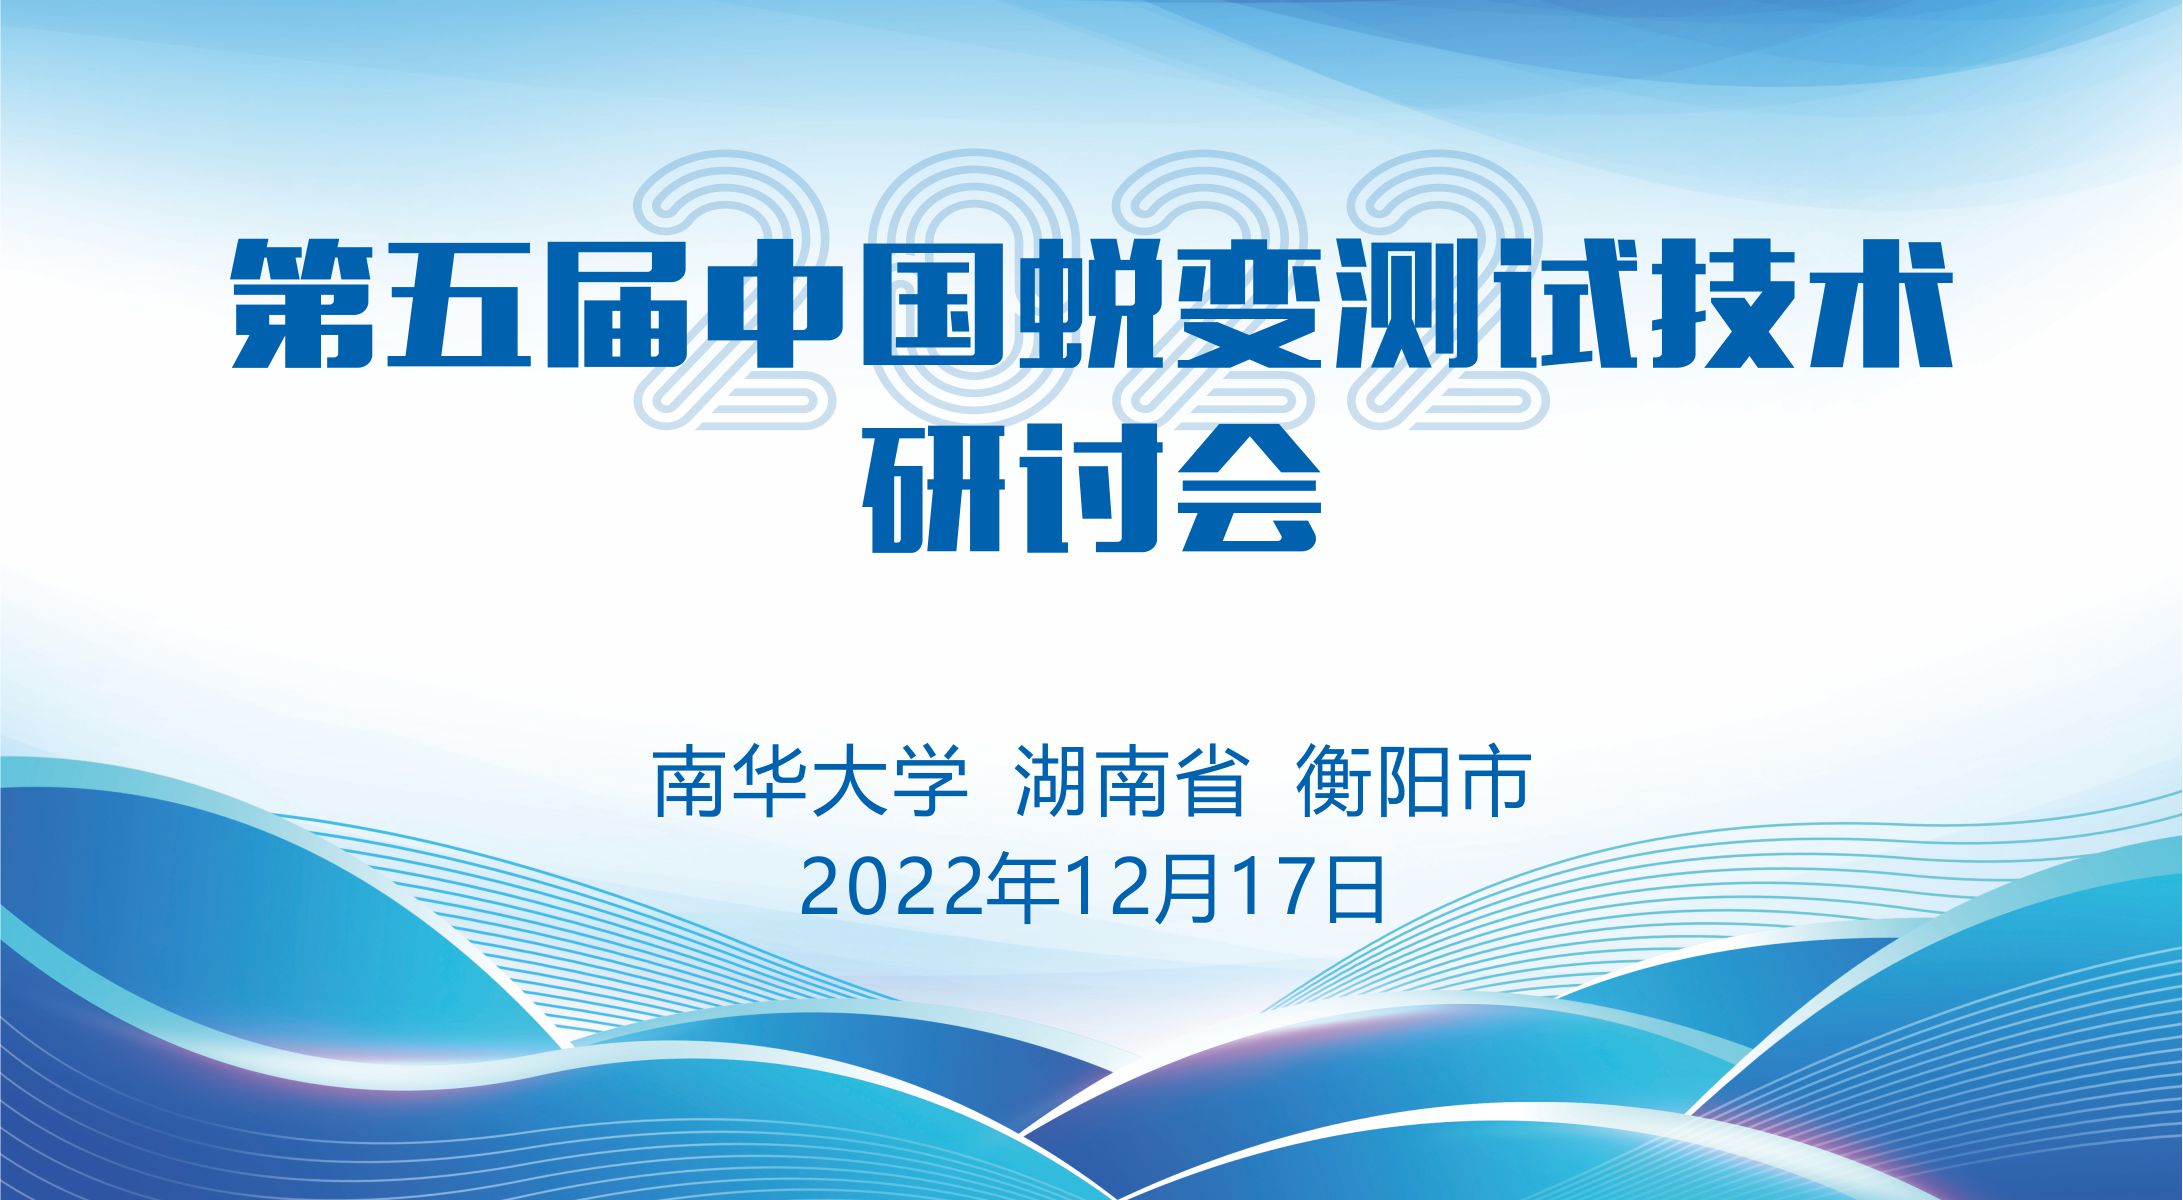 第五届中国蜕变测试技术研讨会即将在我院举办